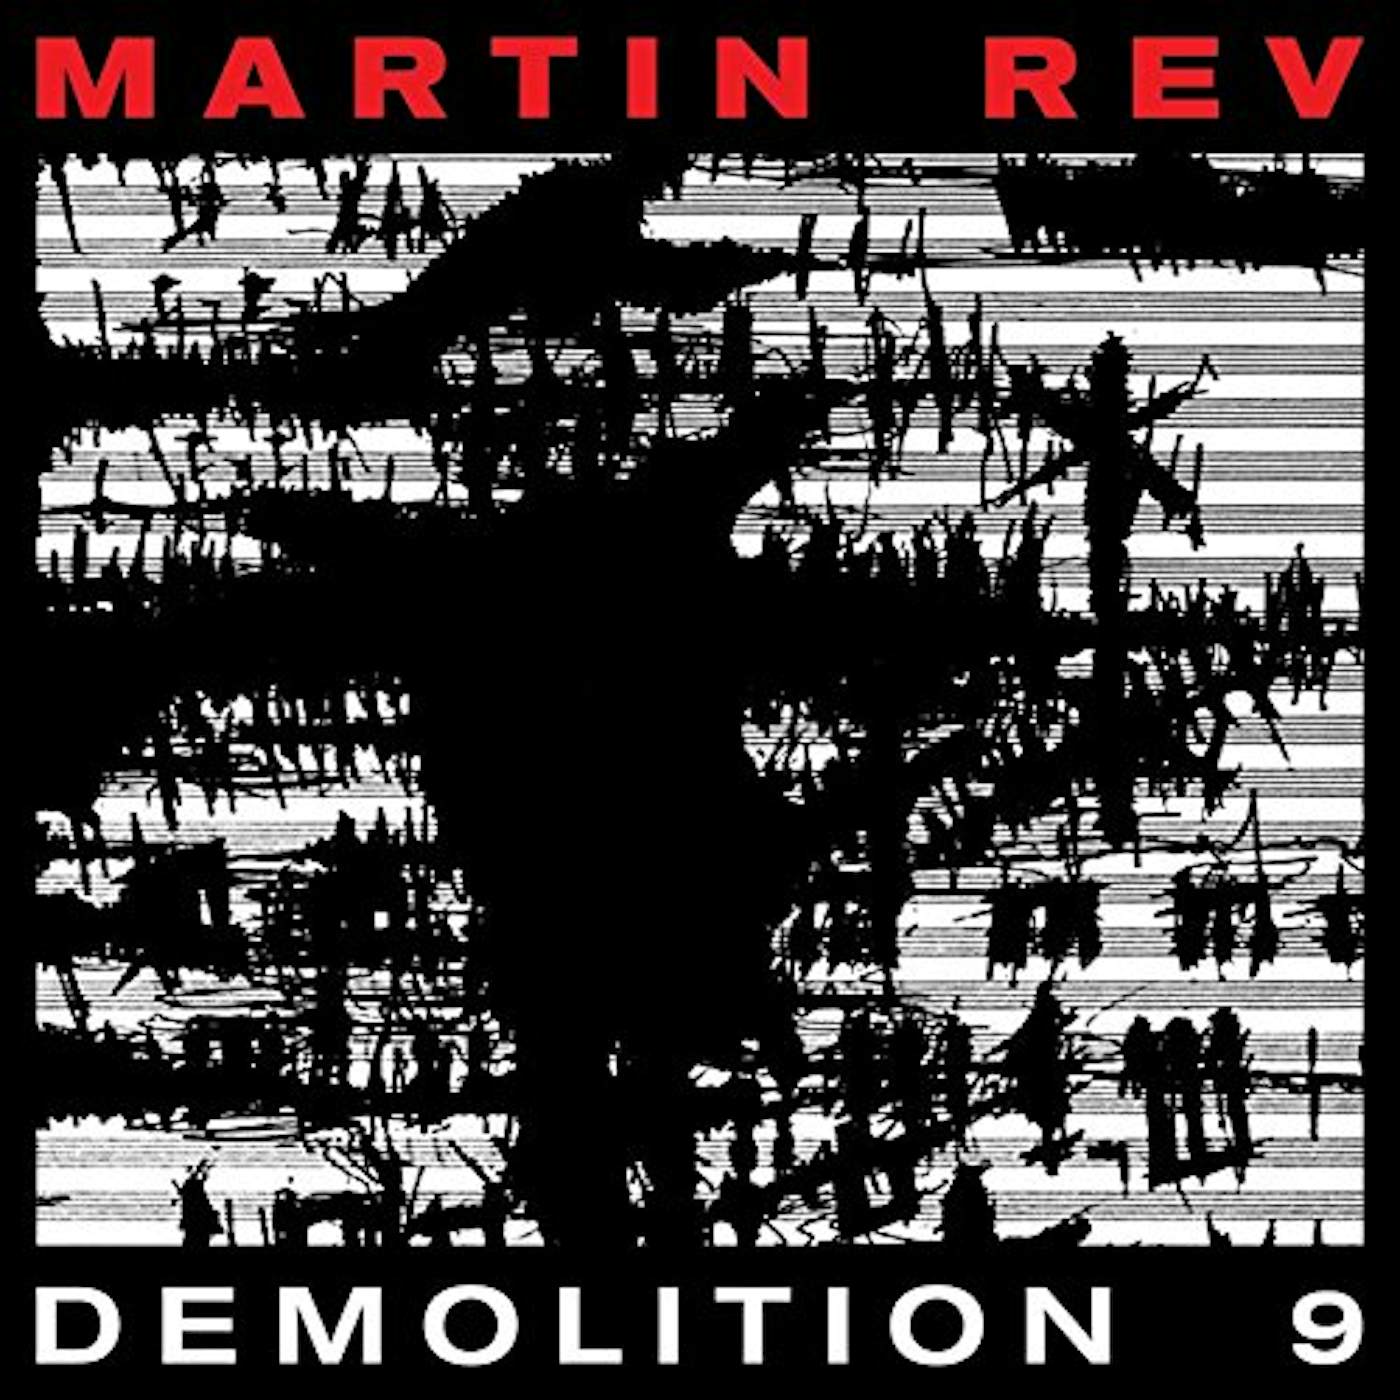 Martin Rev DEMOLITION 9 CD